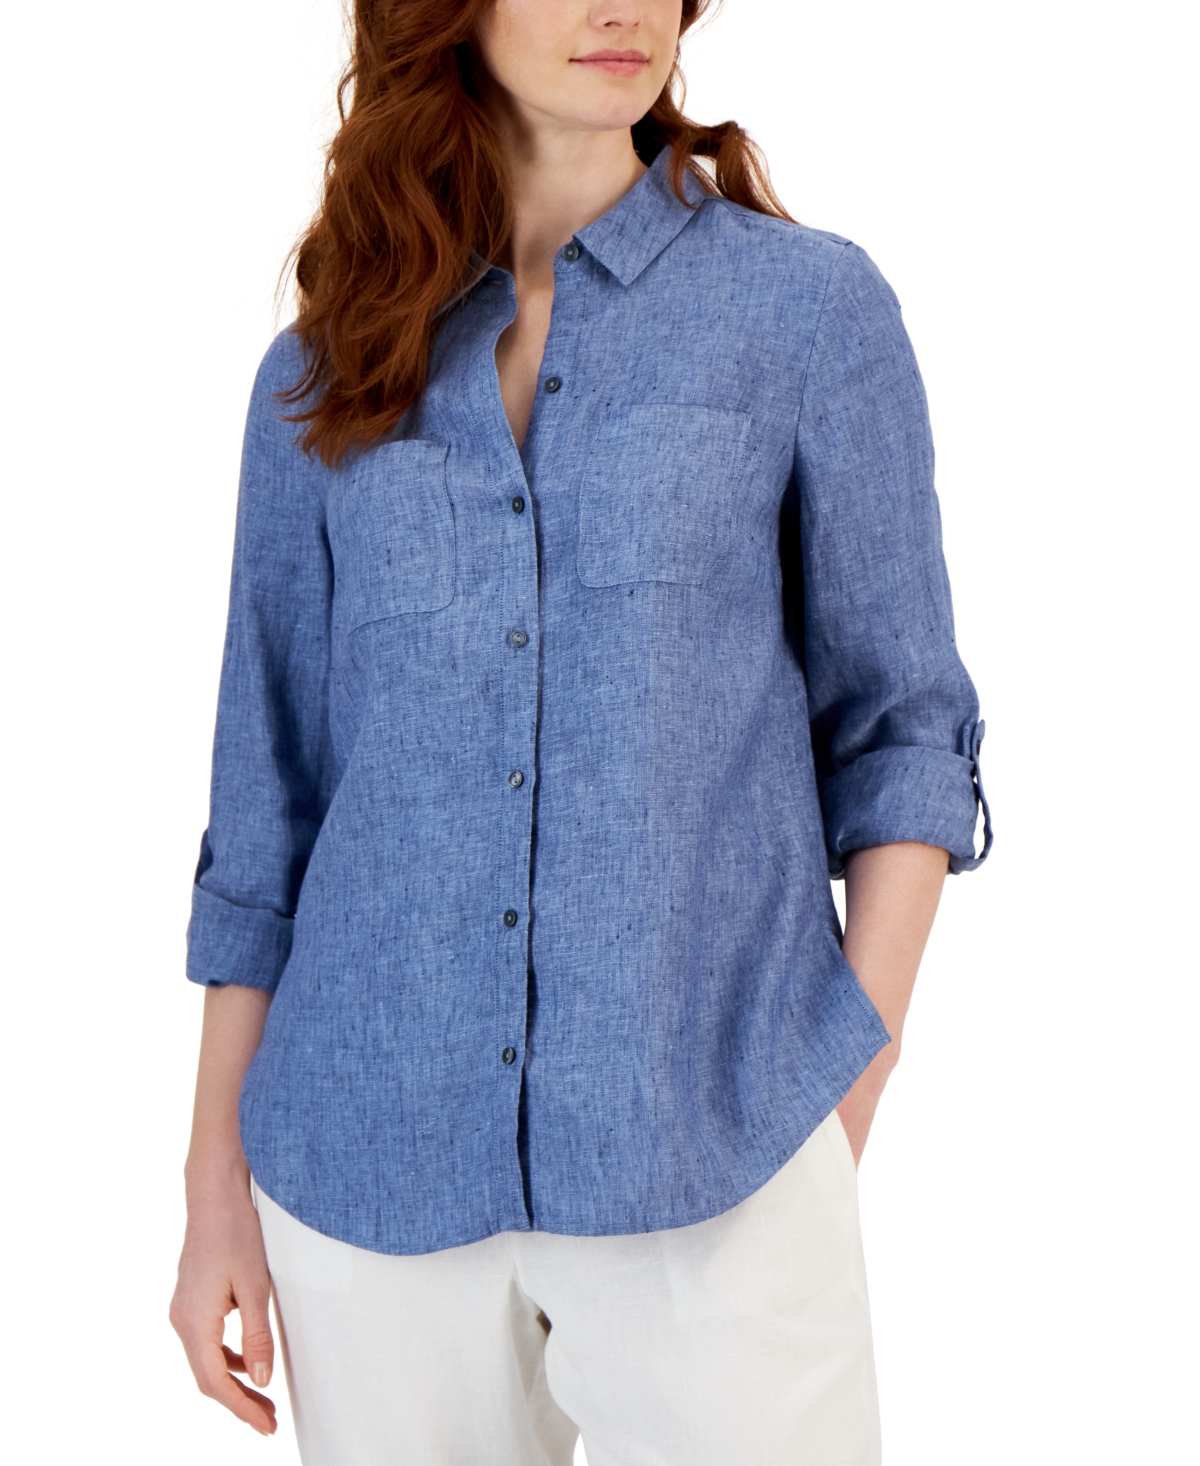 Women's 100% Linen Shirt, Created for Macy's - Light Pool Blue